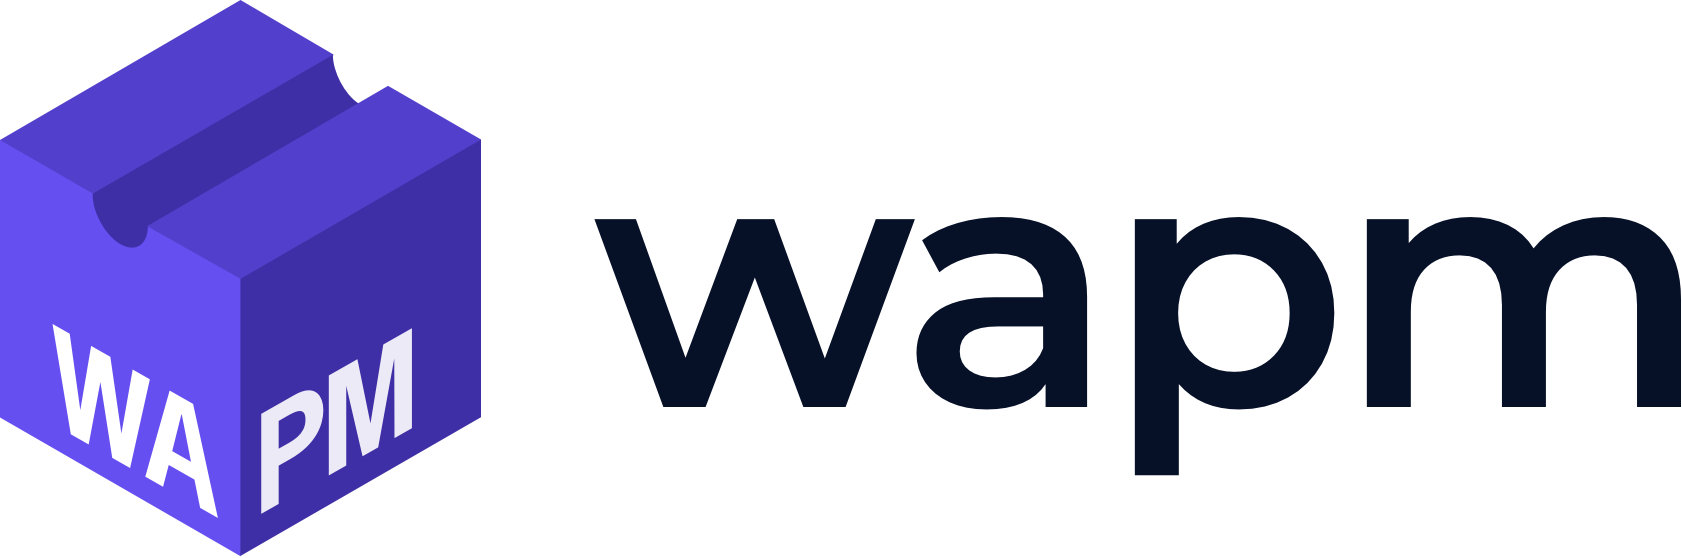 Wapm logo